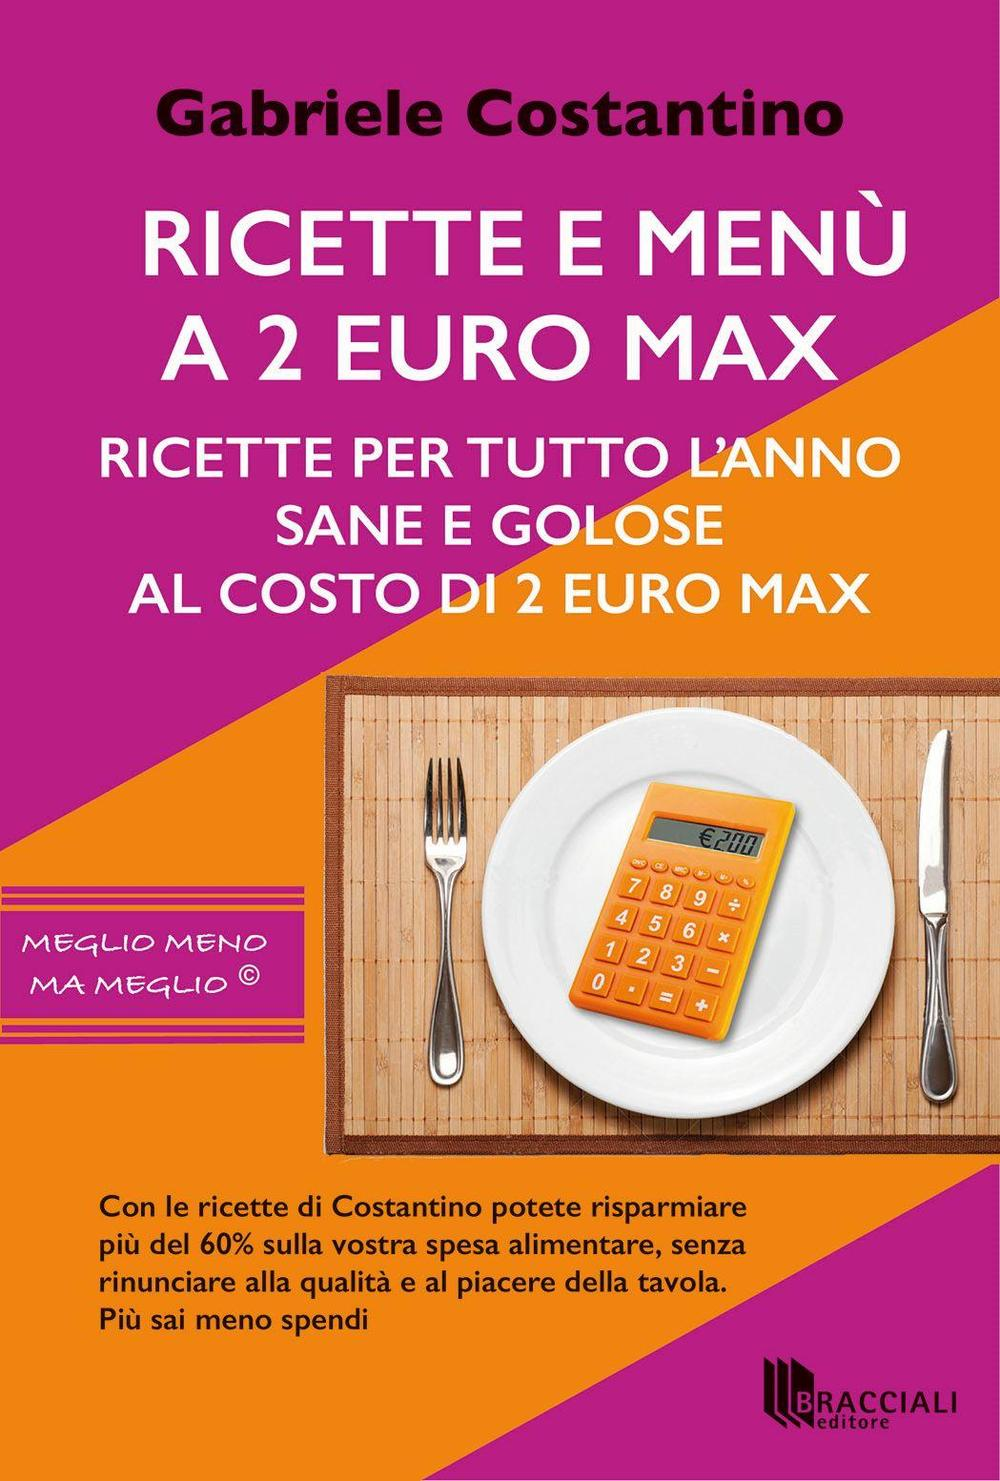 Image of Ricette e menù a 2 euro max. Ricette per tutto l'anno sane e golose al costo di 2 euro